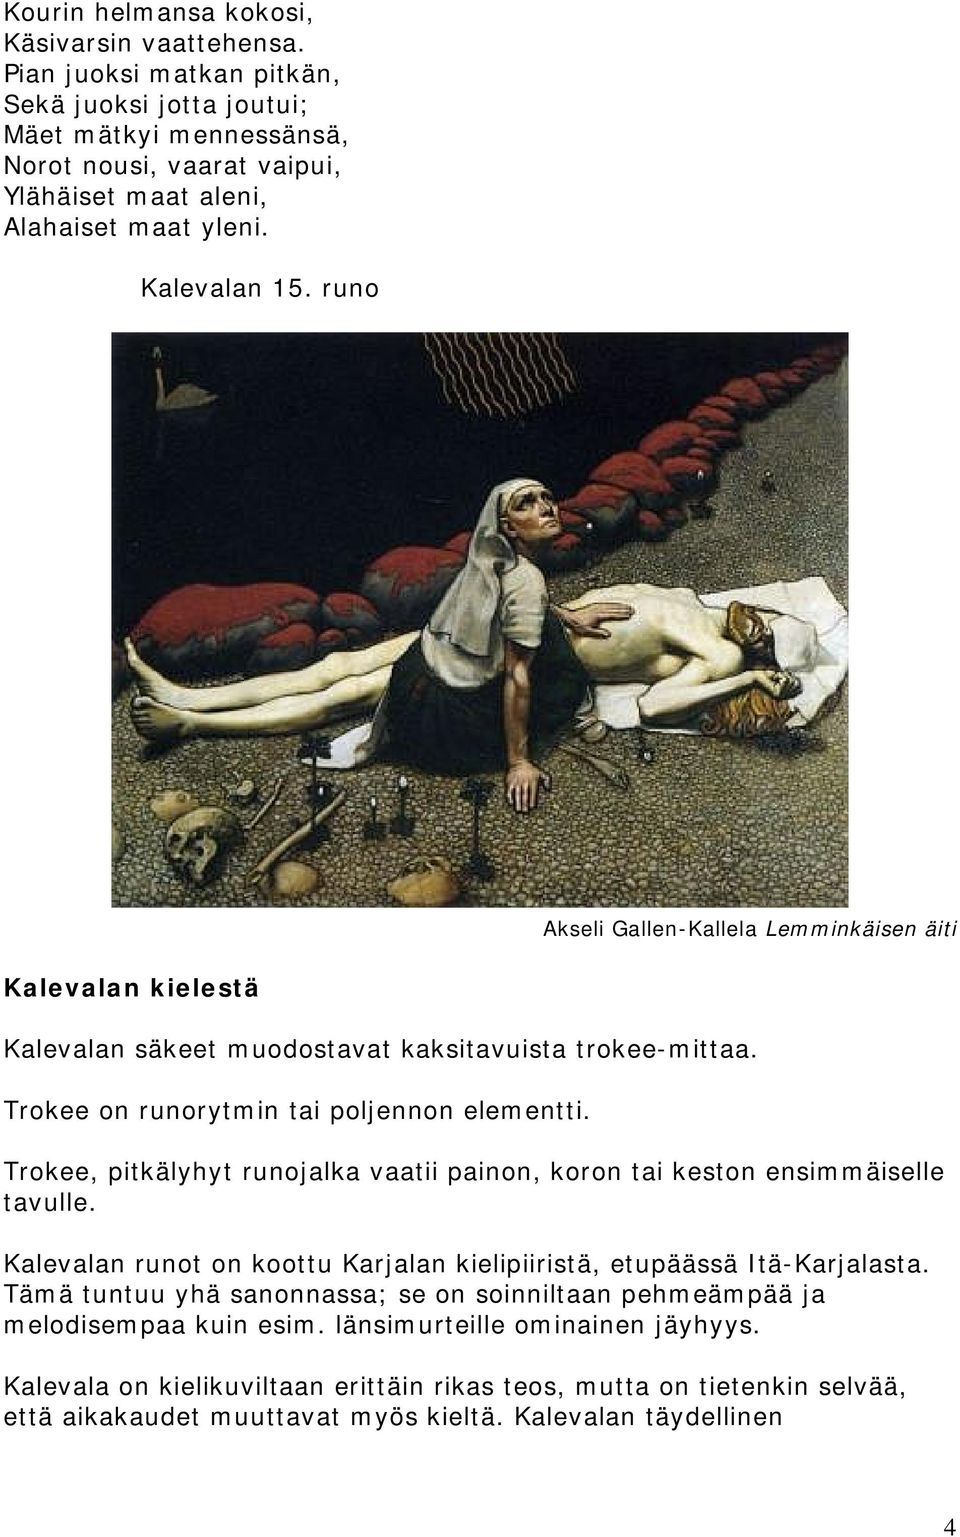 Trokee, pitkälyhyt runojalka vaatii painon, koron tai keston ensimmäiselle tavulle. Kalevalan runot on koottu Karjalan kielipiiristä, etupäässä Itä-Karjalasta.